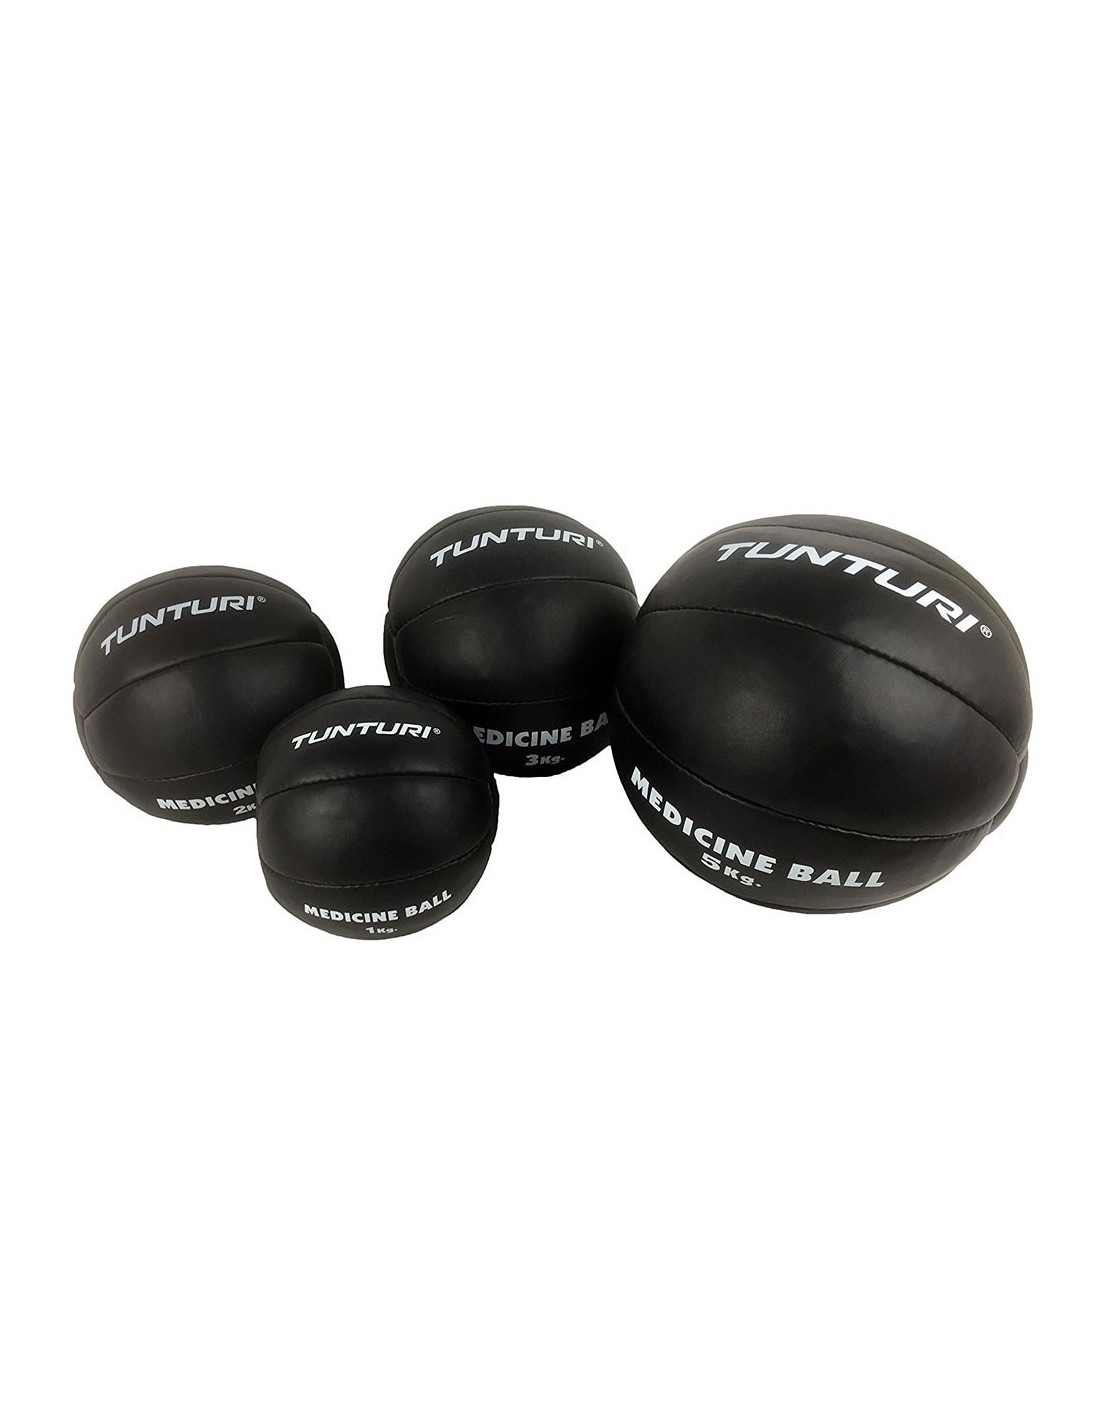 Tunturi Medizinball Kunstleder schwarz, 3kg Gewicht - 3.0 kg, Ballvariante - Medizinball, von Tunturi